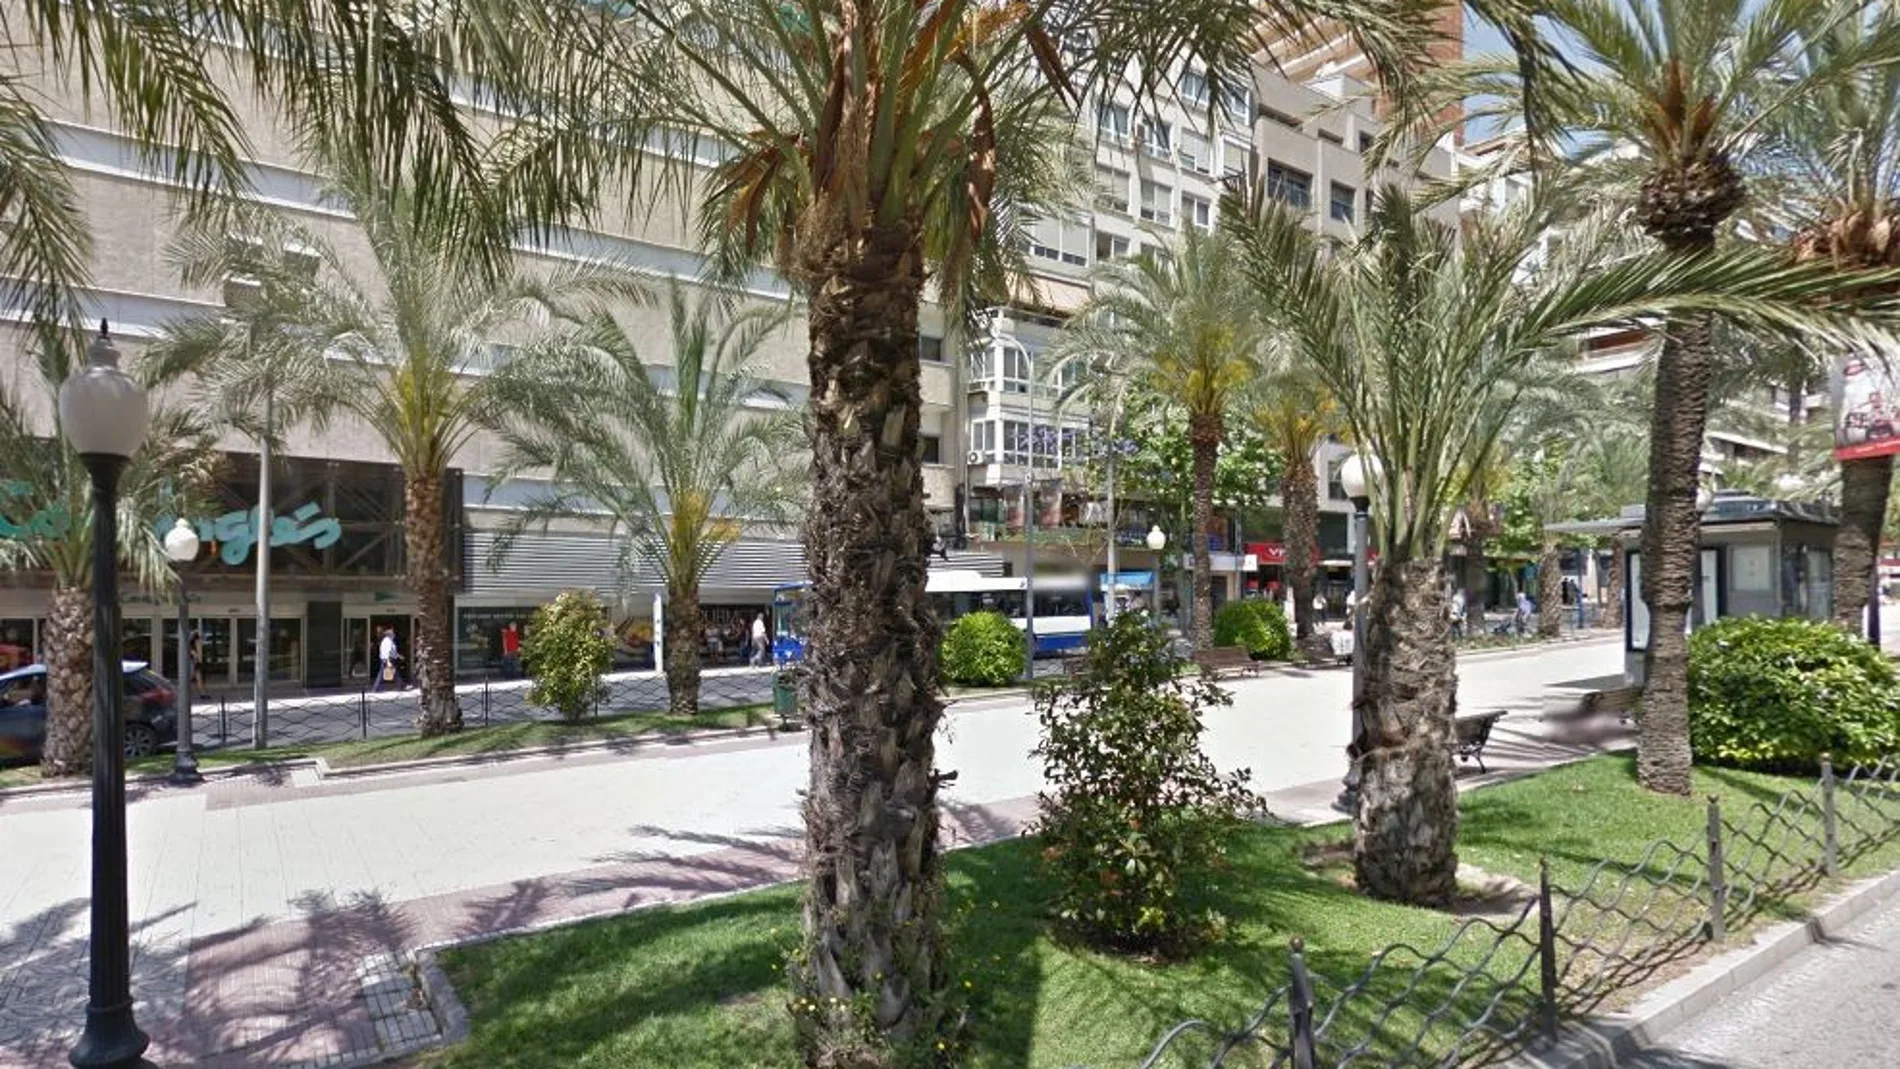 La detención se produjo en una céntrica calle comercial de Alicante